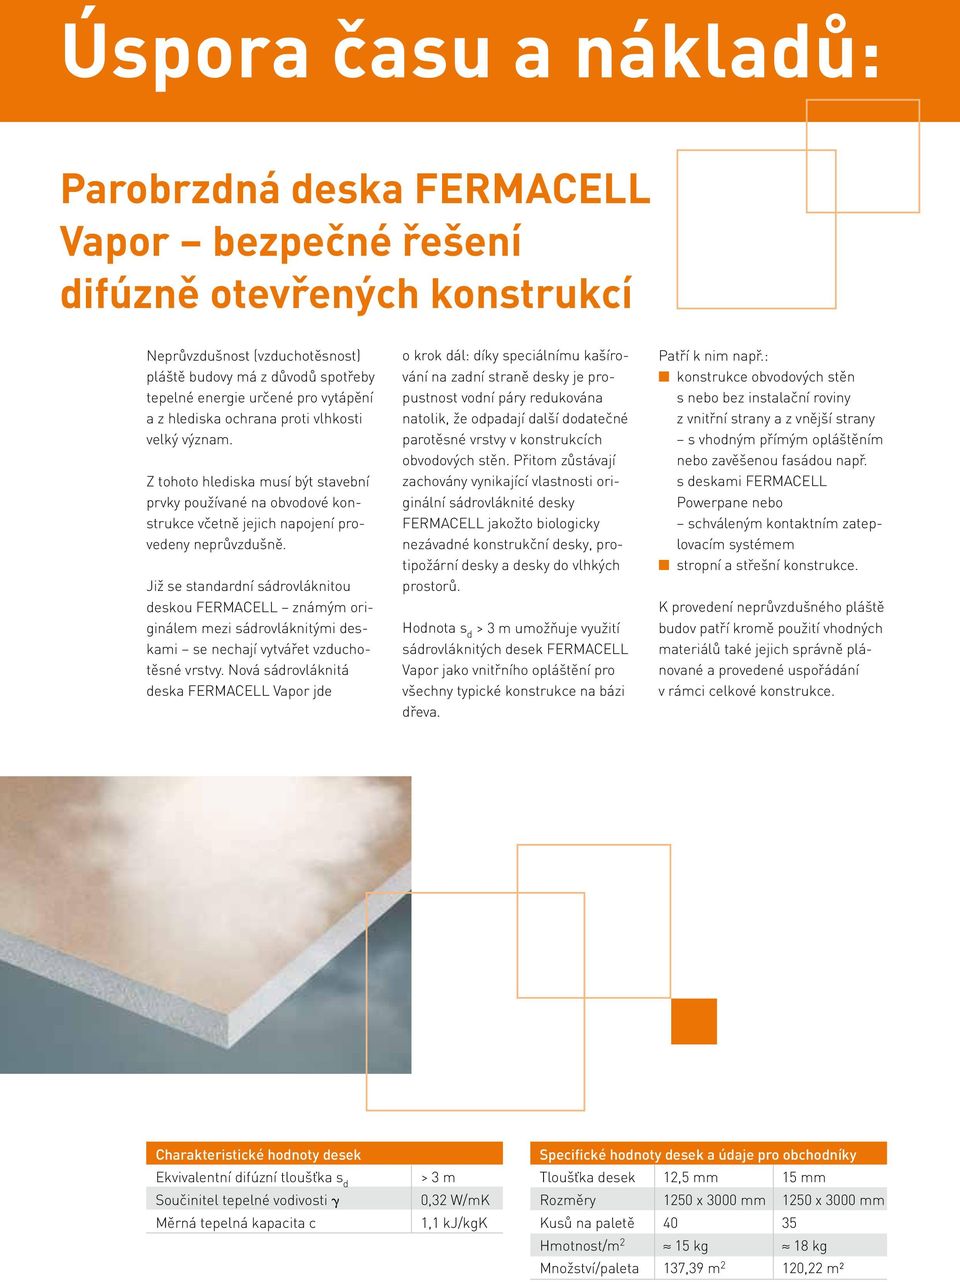 Již se standardní sádrovláknitou deskou FERMACELL známým originálem mezi sádrovláknitými deskami se nechají vytvářet vzduchotěsné vrstvy.